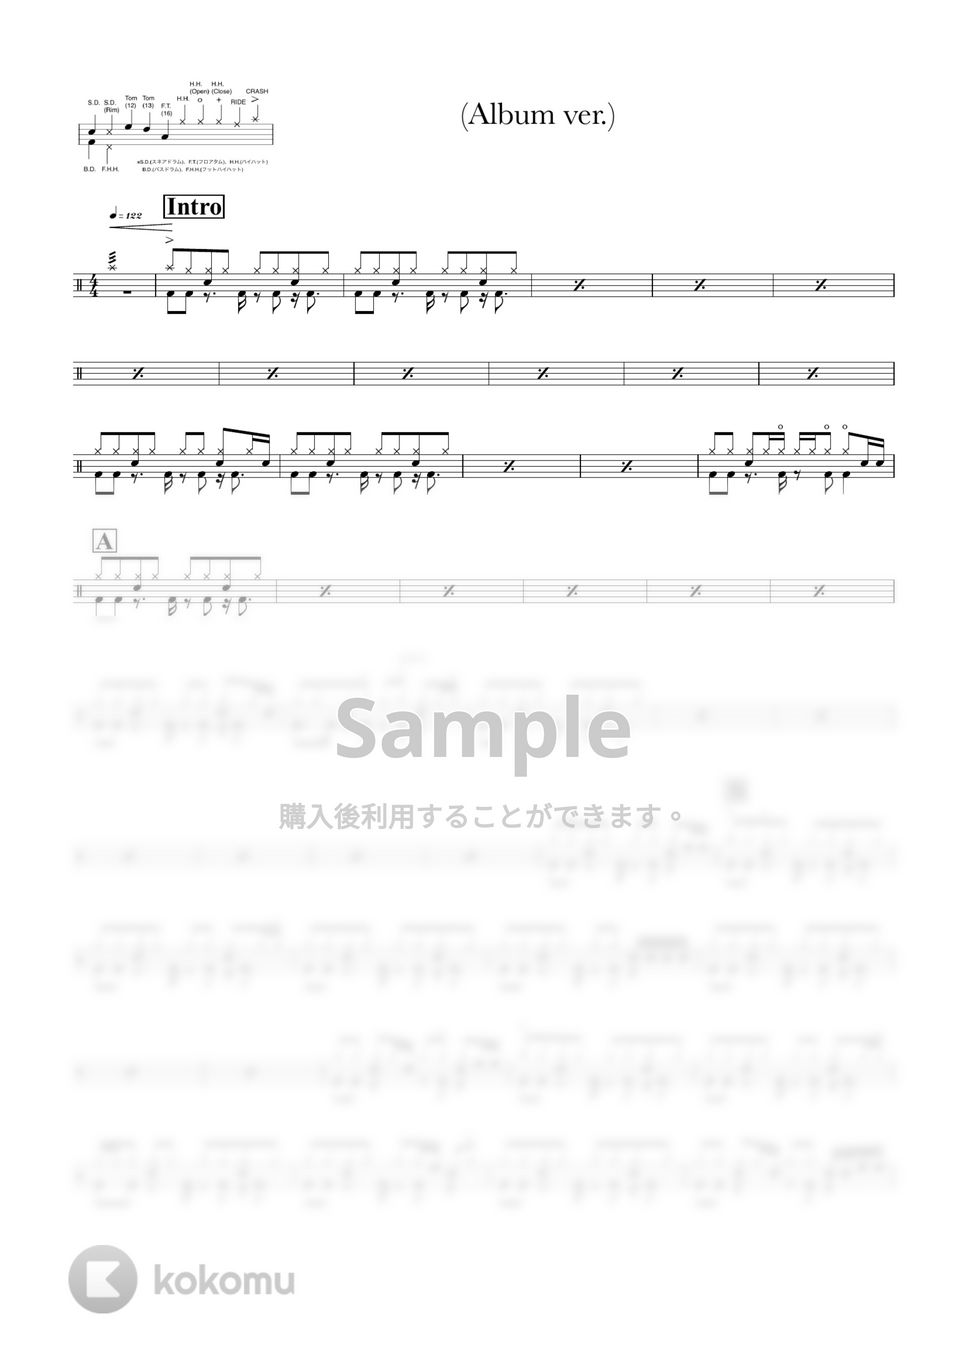 スピッツ - 青い車 (Album ver.) by ONEDRUMS